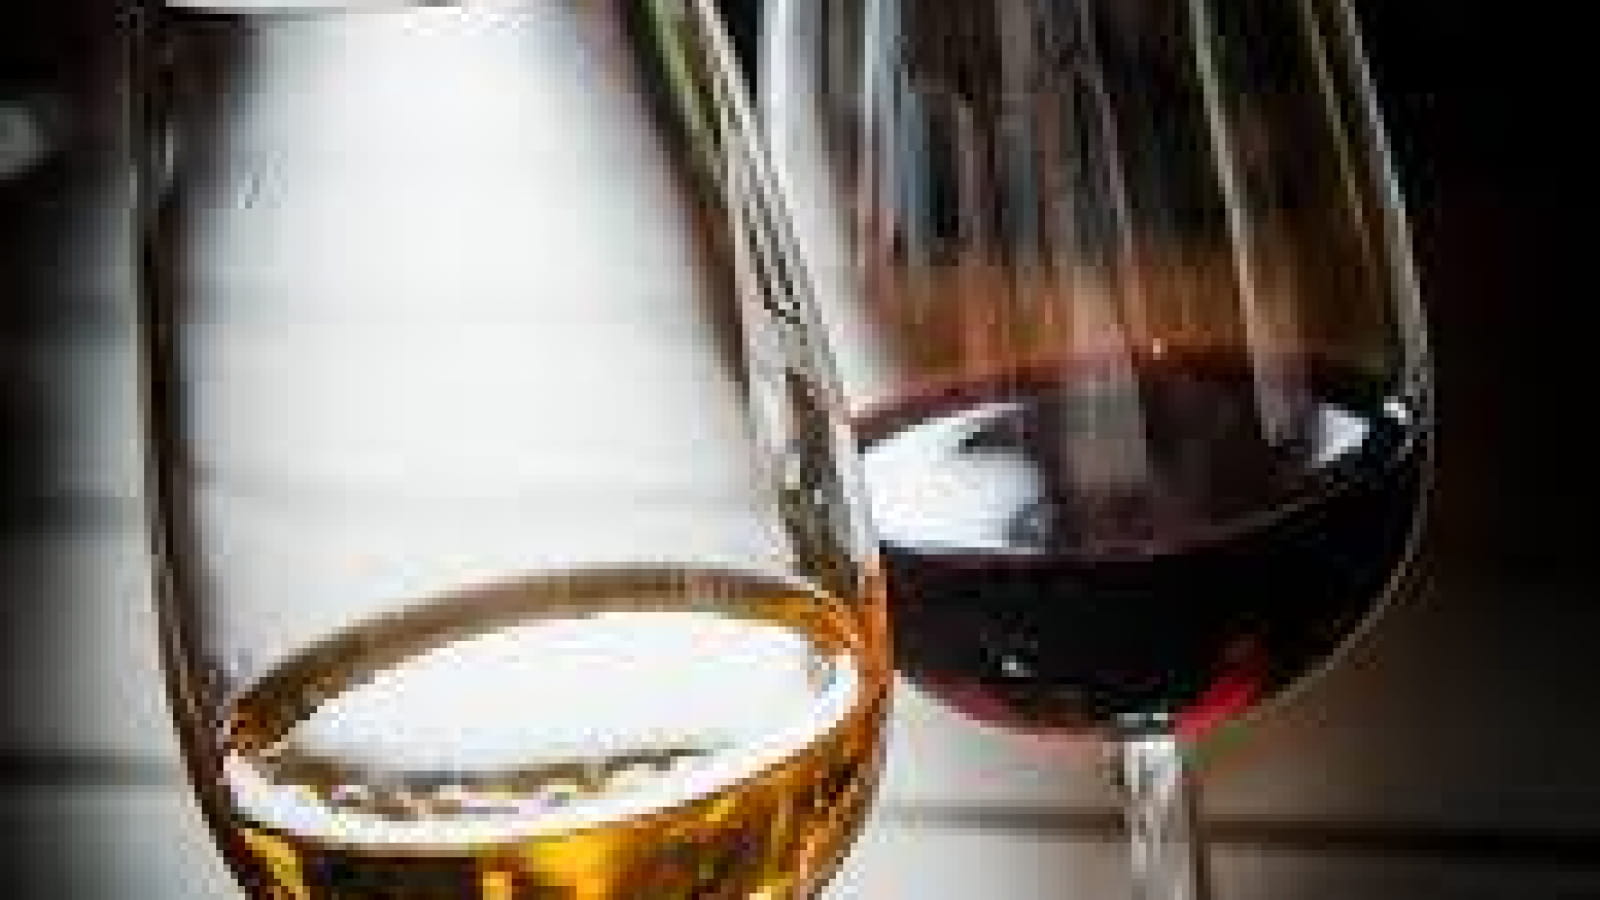  Séance de dégustation “Les vins d’Auvergne, du Saint Pourçain au Côtes d’Auvergne” 